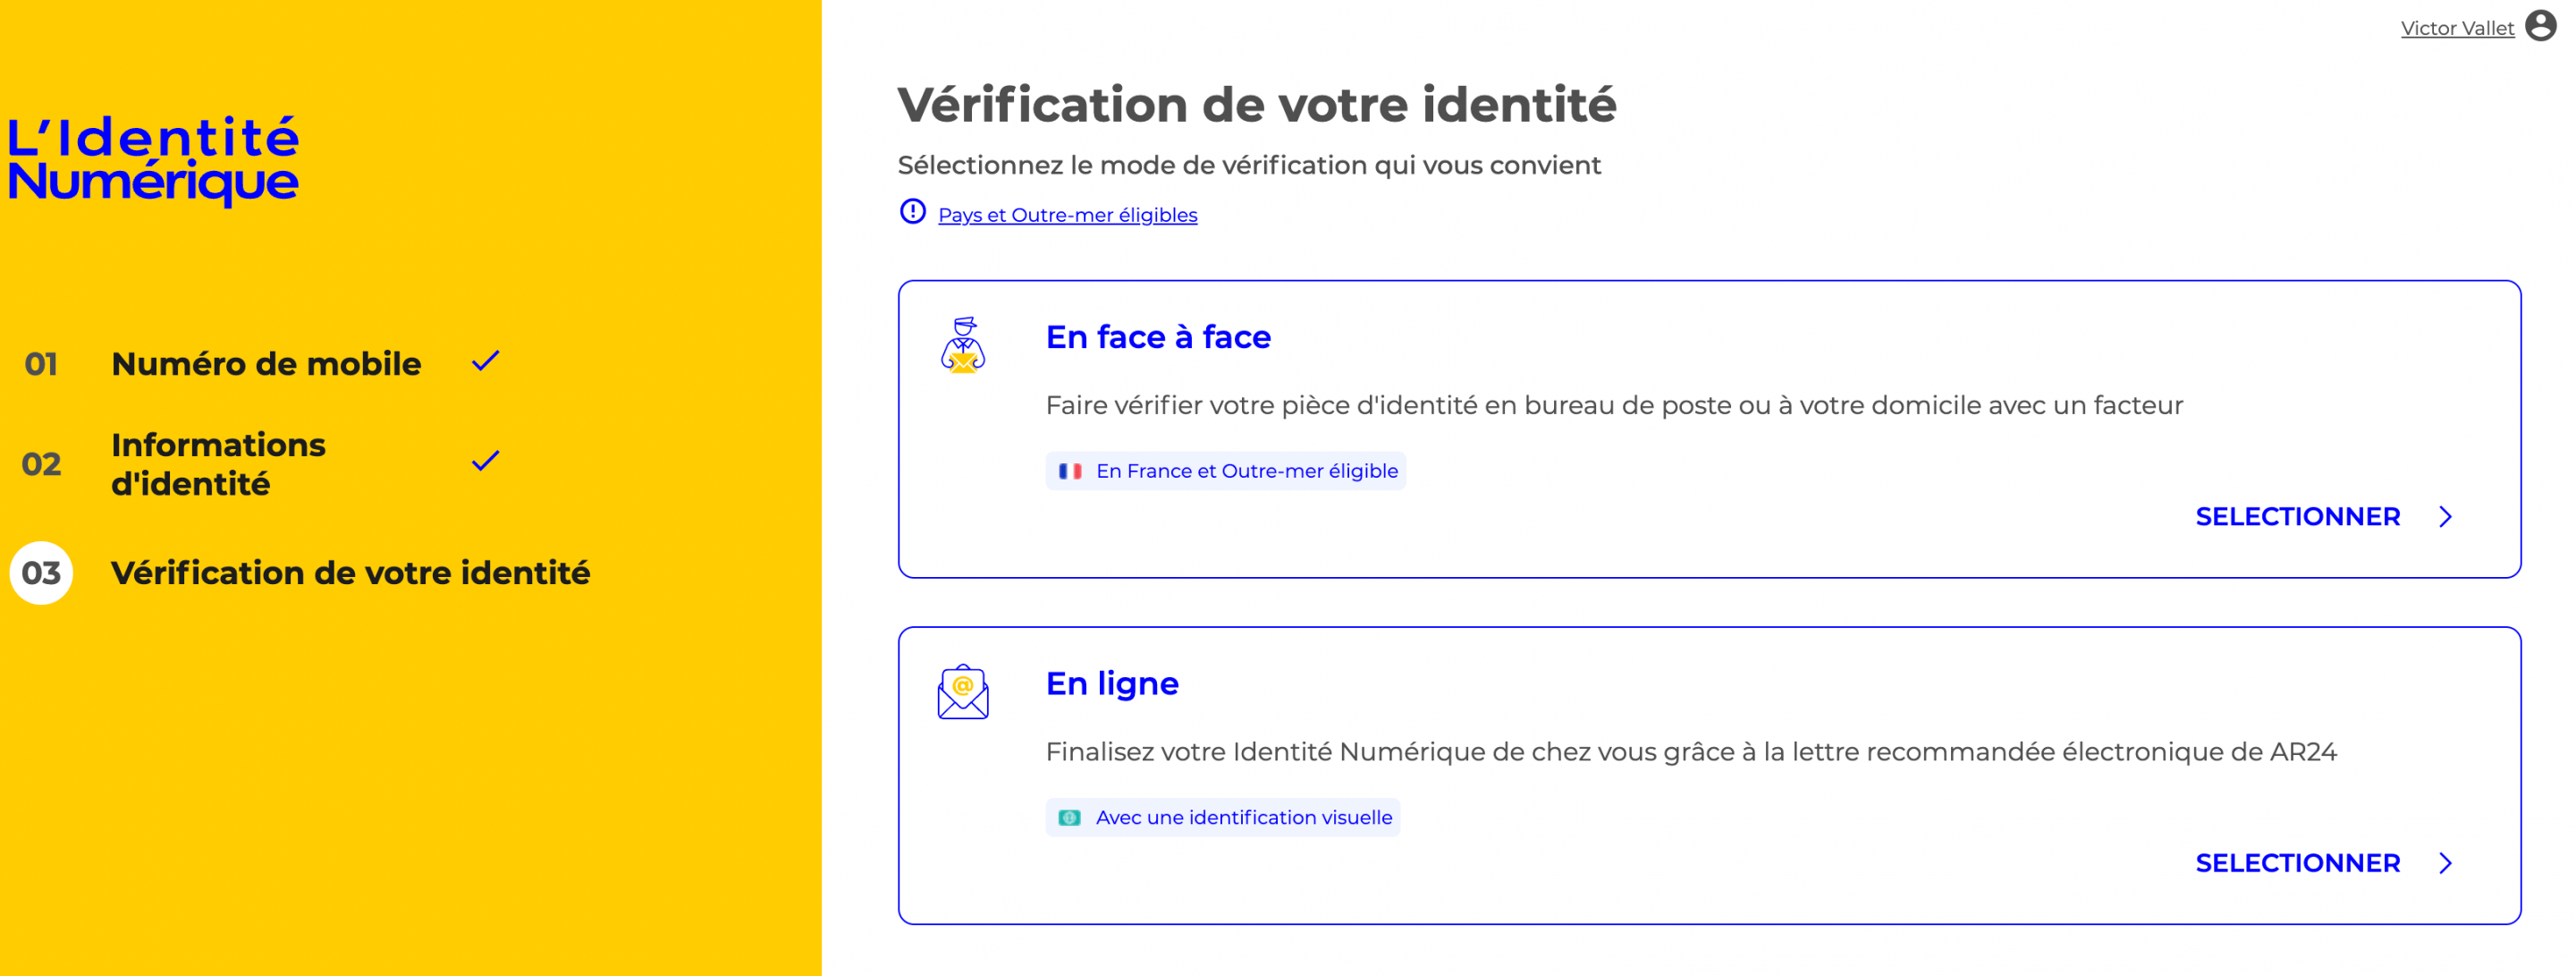 identite numerique type de verification d'identite